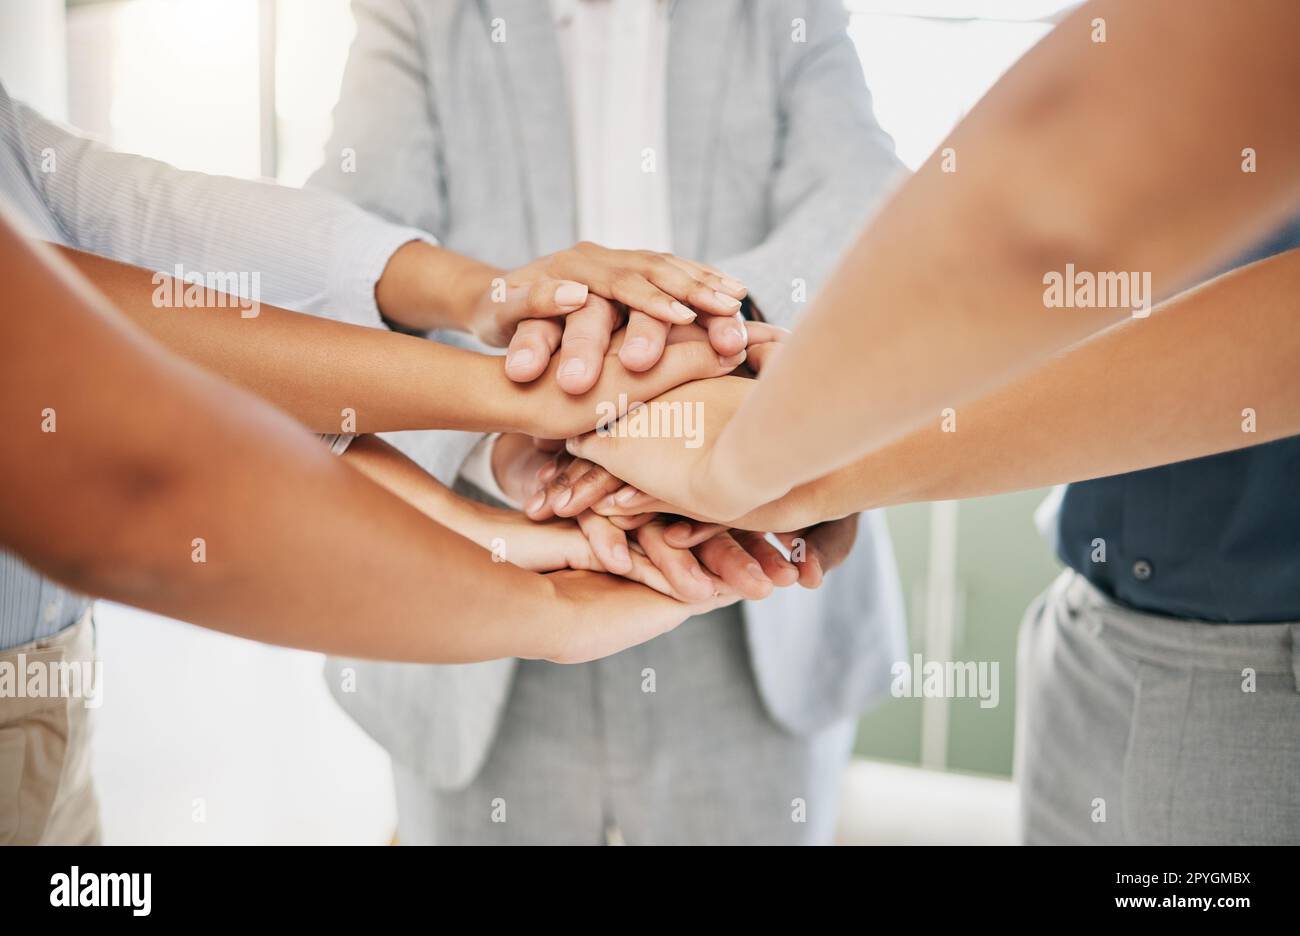 Hände, Geschäftsleute zusammen und unterstützen durch Solidarität und Teambildung, Zusammenarbeit mit Team und Unternehmensgruppe. Arbeit, Mitarbeiter und Mission mit Teamarbeit, Gemeinschaft und Vertrauen bei der Arbeit. Stockfoto